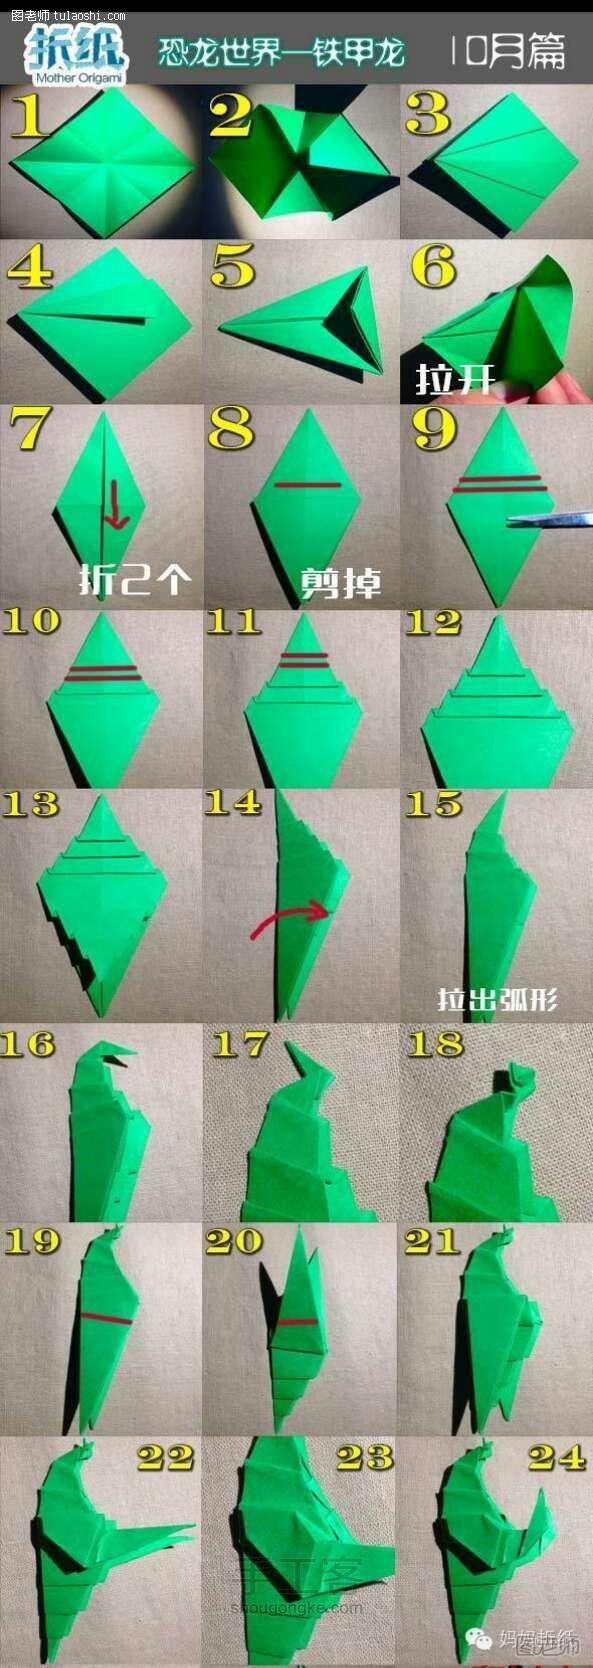 折纸教程恐龙篇~铁甲龙 第1步